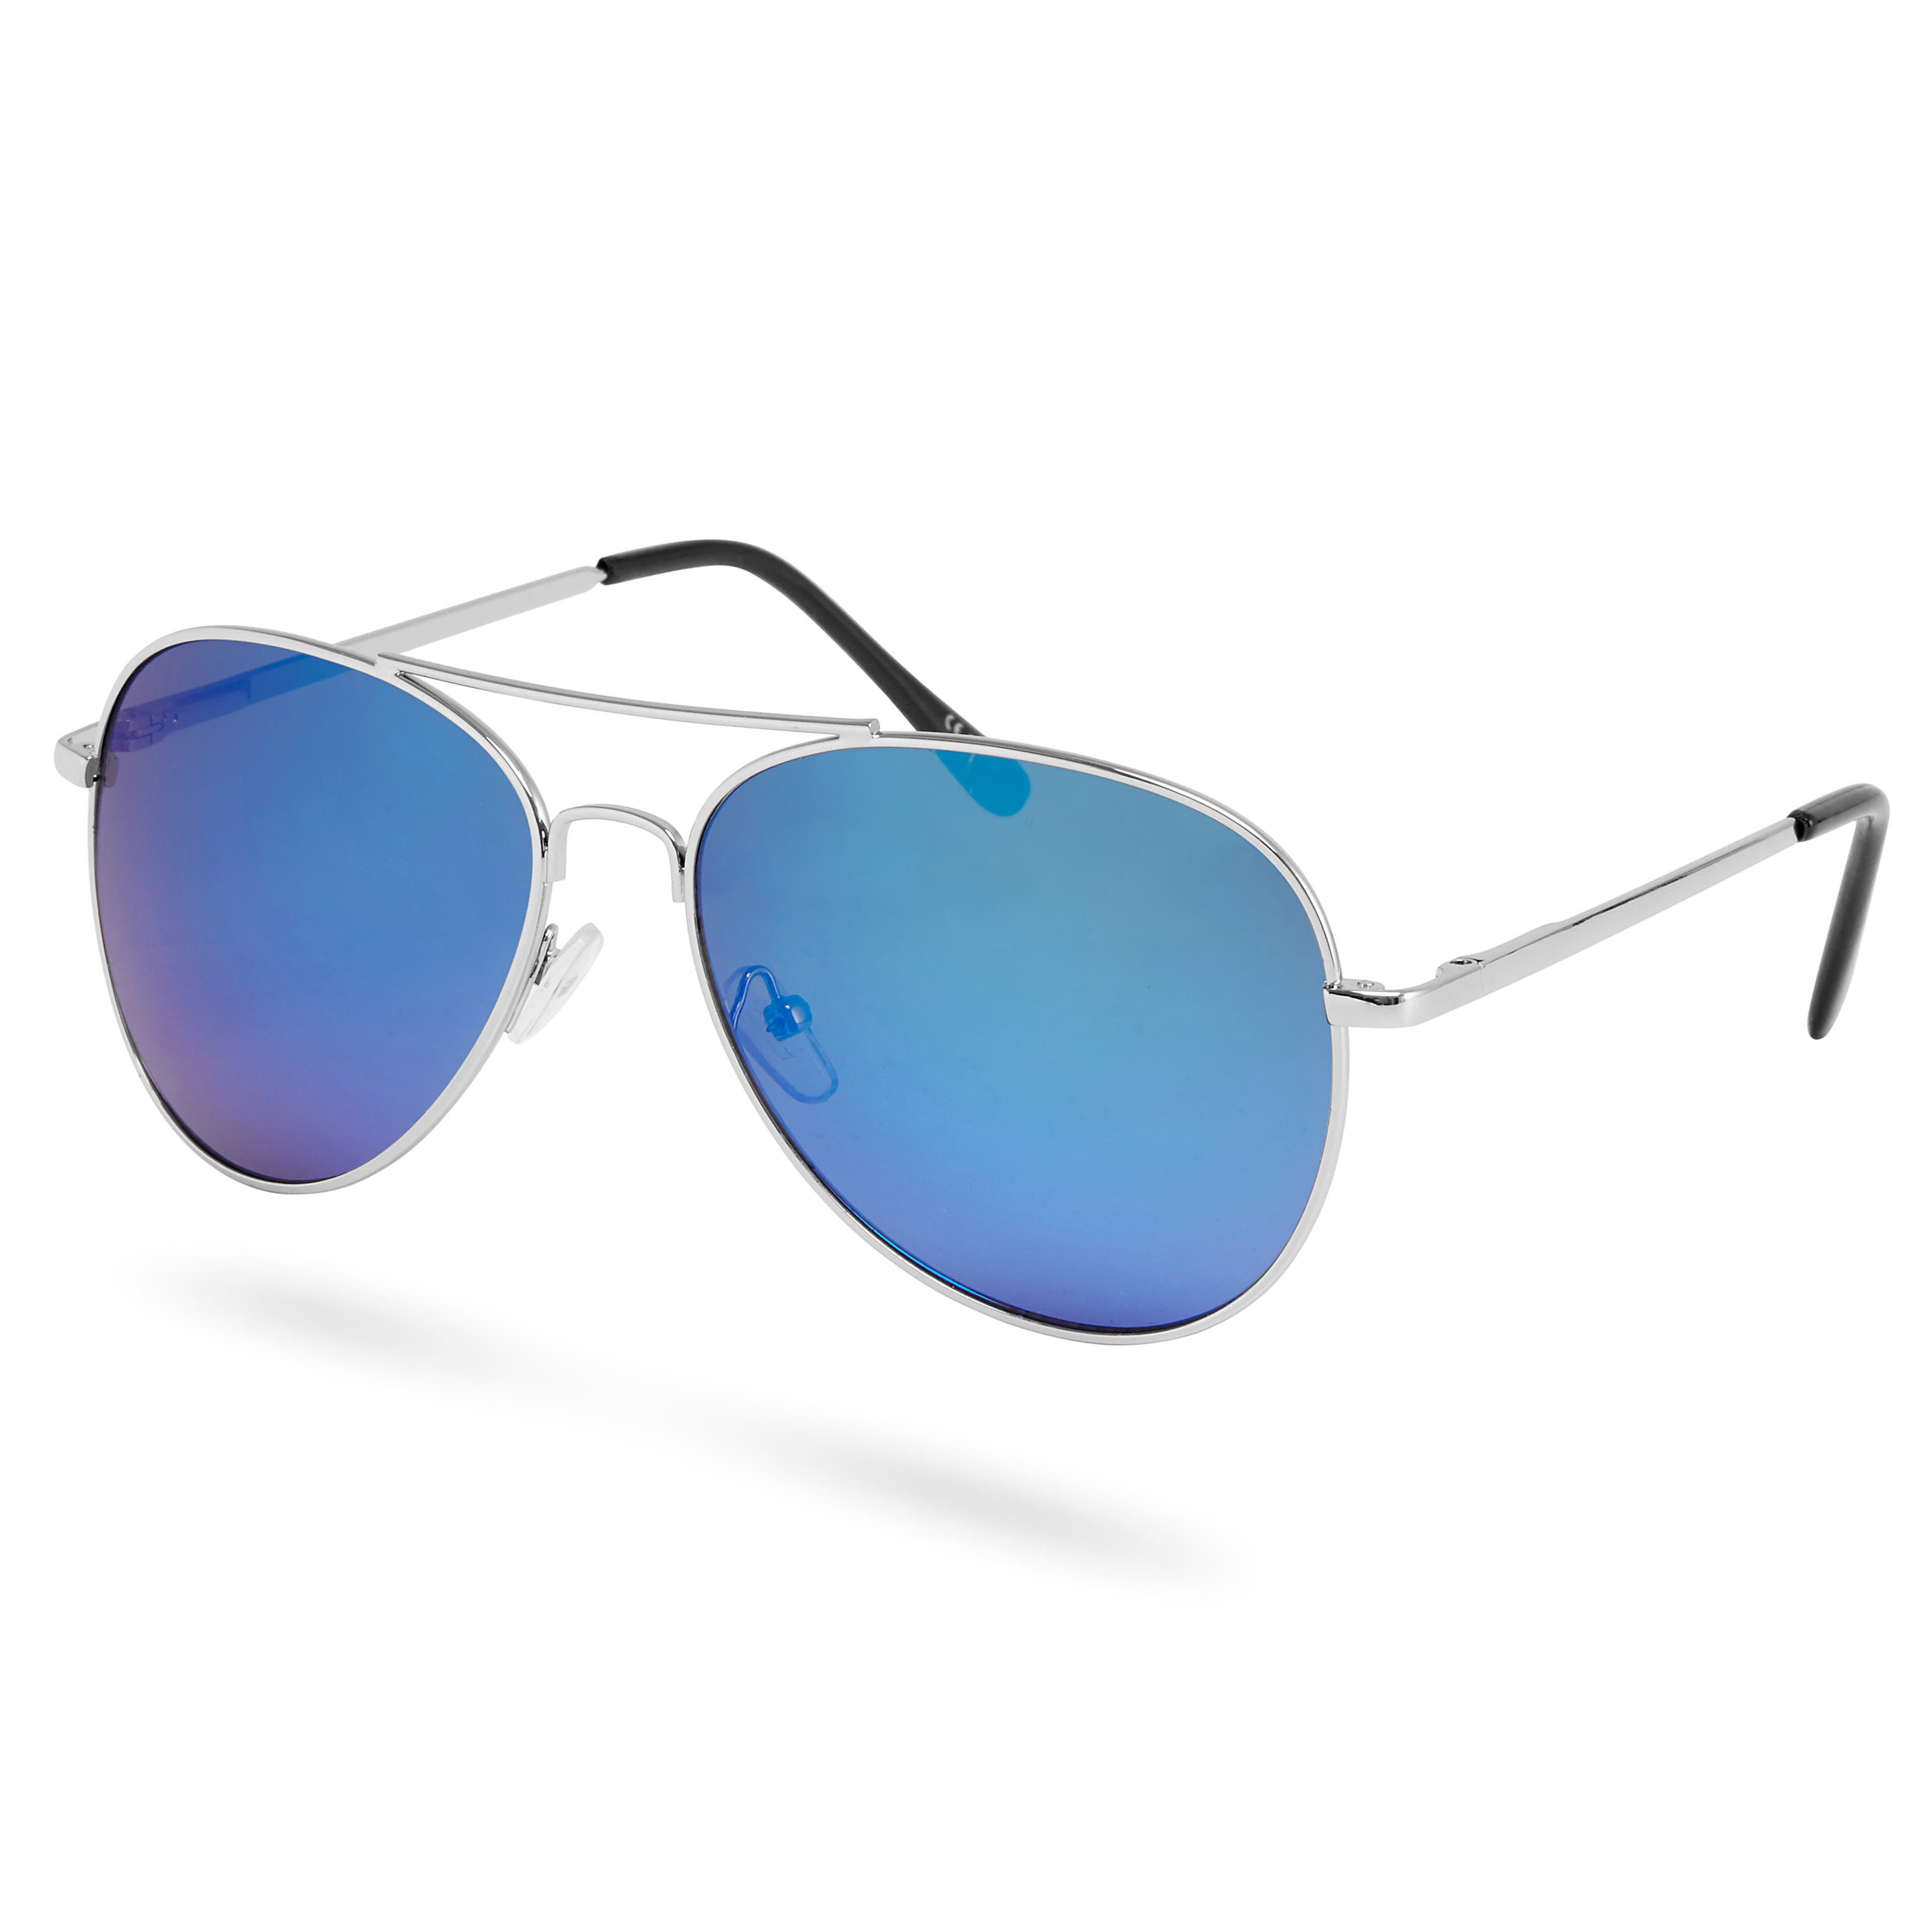 Aviator zrcadlové sluneční brýle ve stříbrné a modré barvě